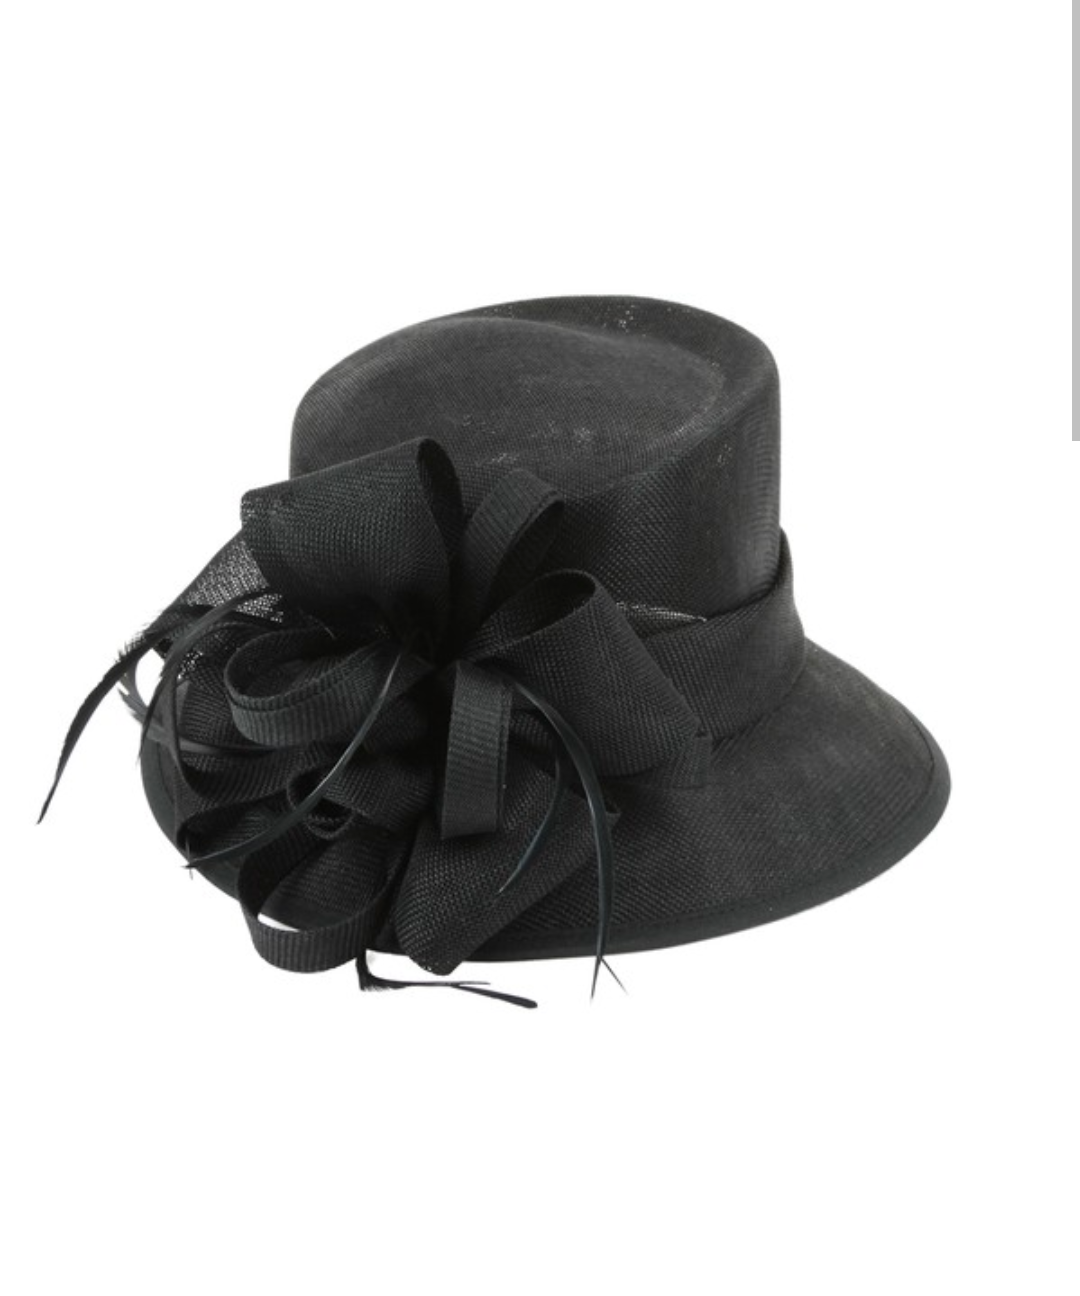 Small Brim Derby Flax Fabric Hat